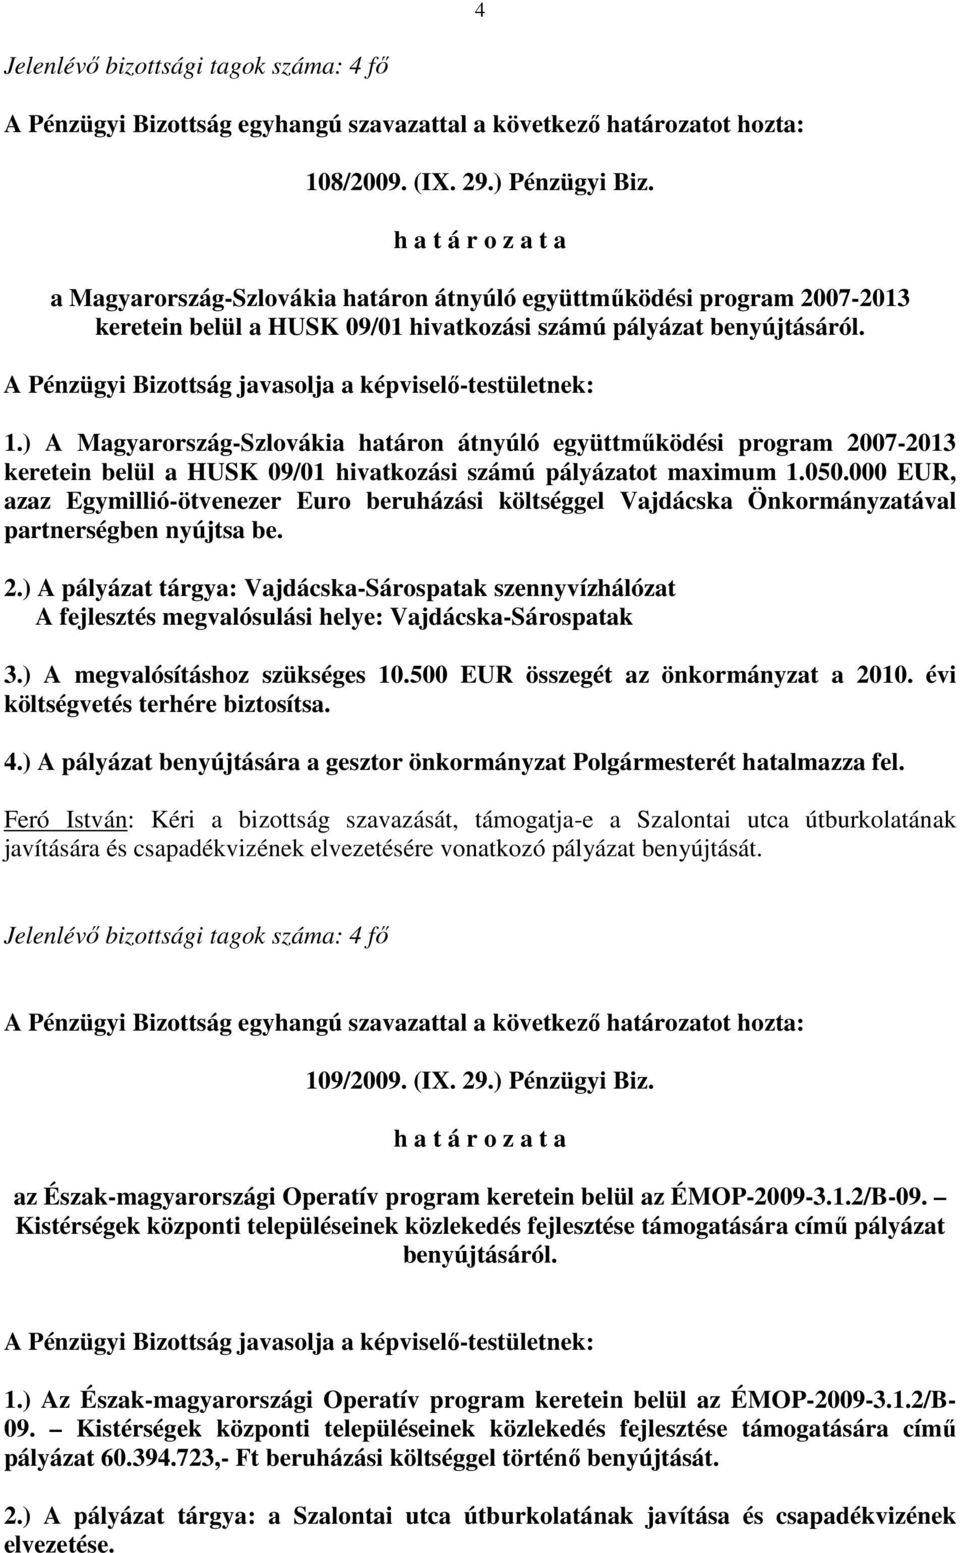 ) A Magyarország-Szlovákia határon átnyúló együttmőködési program 2007-2013 keretein belül a HUSK 09/01 hivatkozási számú pályázatot maximum 1.050.